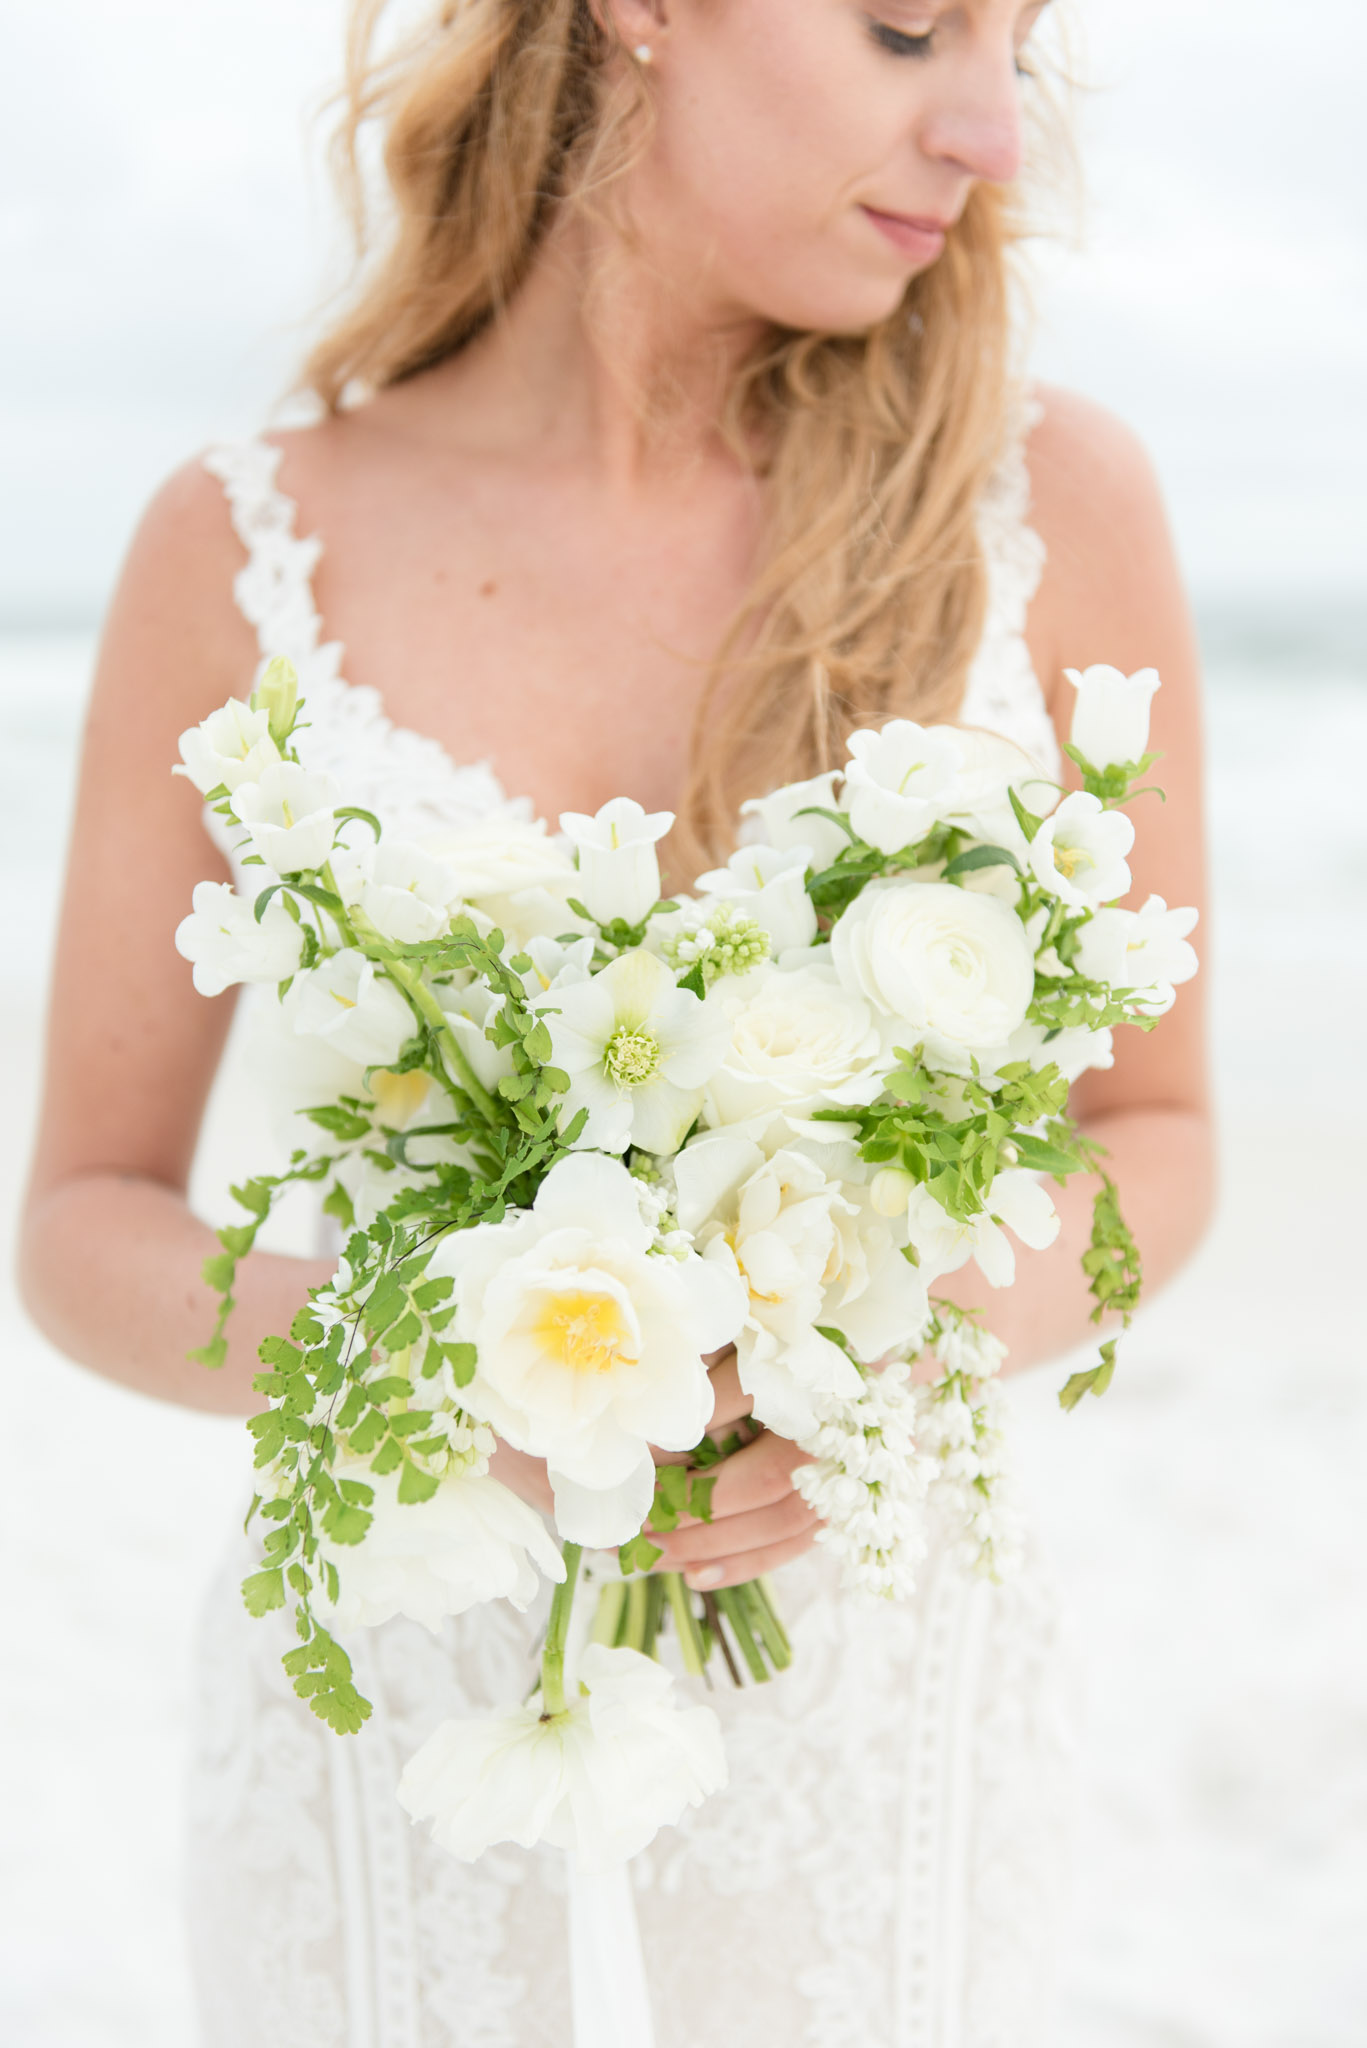 Bride holds wedding bouquet.